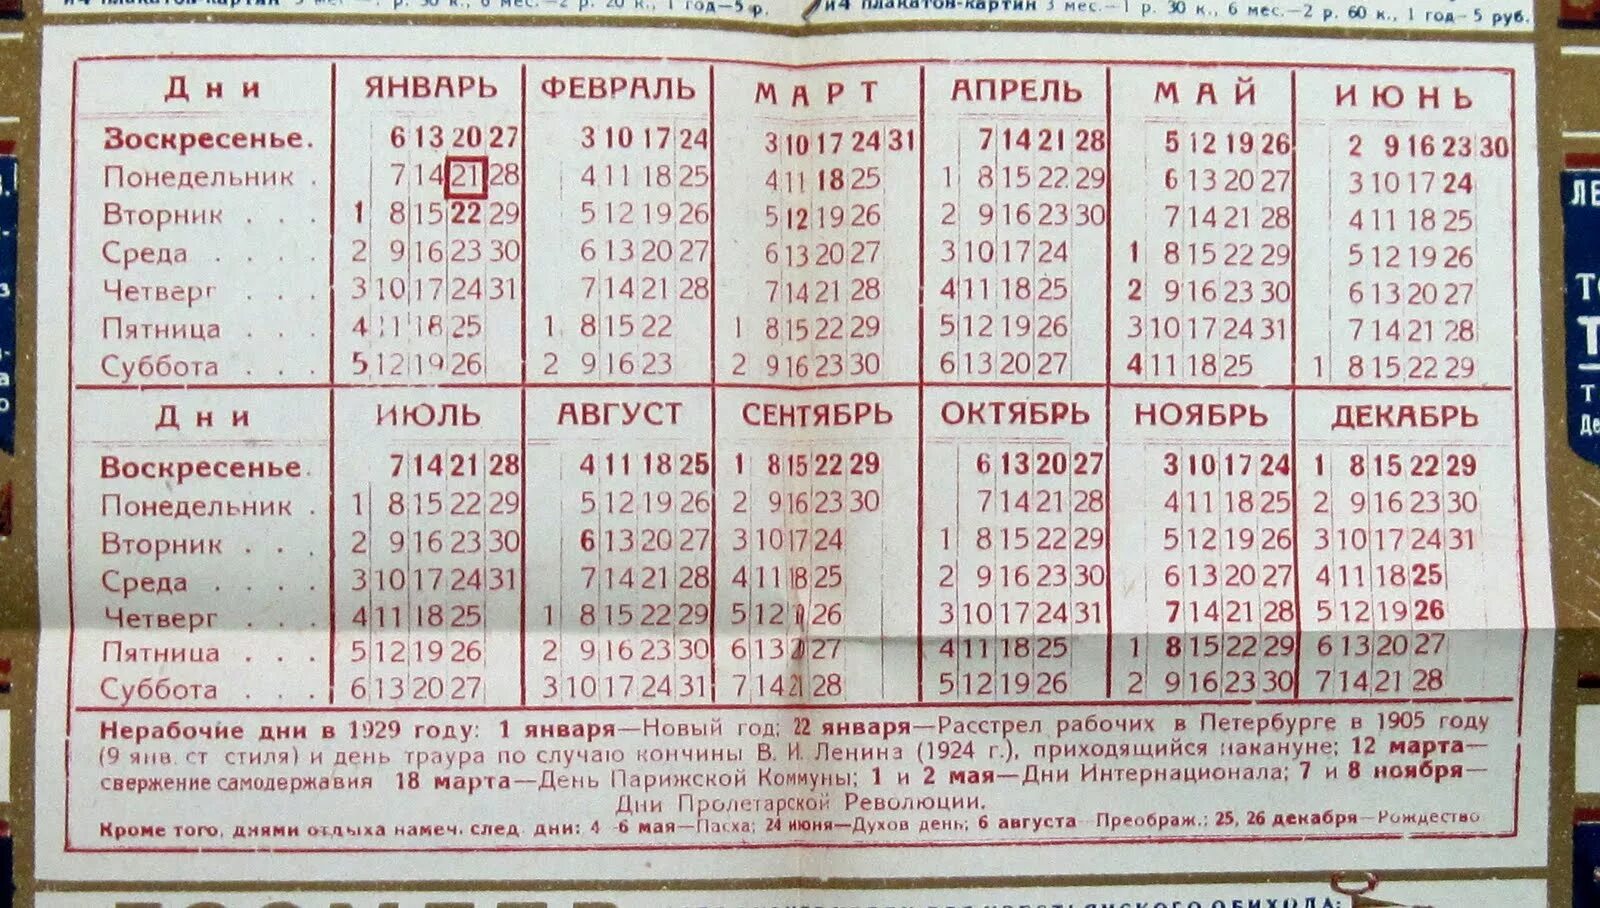 Пасха 1995 года число. Календарь праздников 1929 года. Календарь советских праздников. Табель календарь 1929 года. Табель календарь на 1930 год.